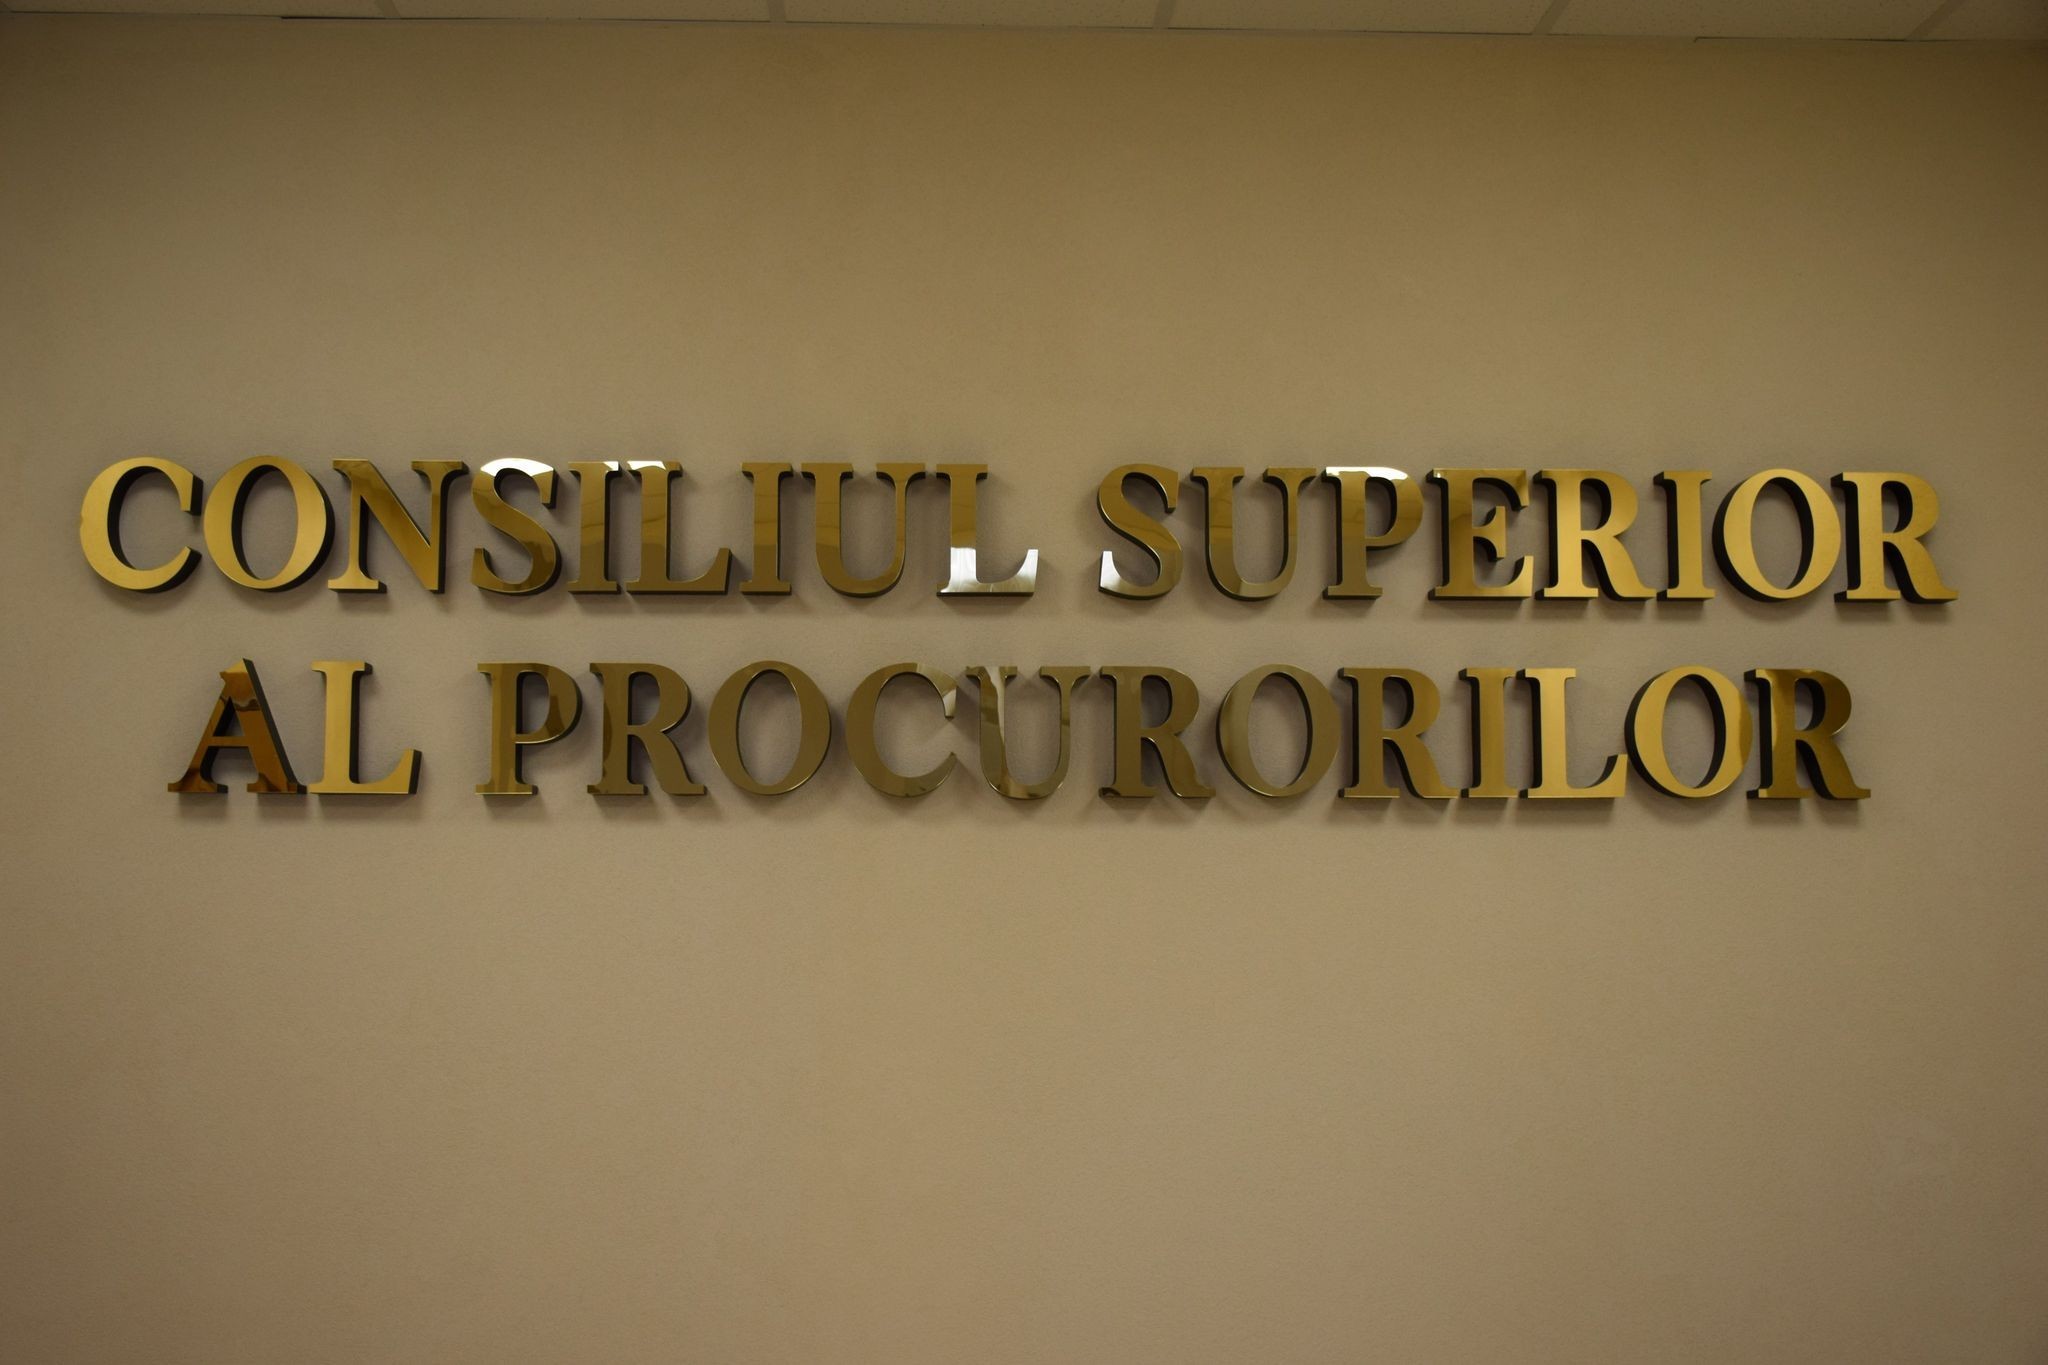 Procurorii din cadrul CSP: crearea Colegiului special de apel, ca fiind un colegiu separat în cadrul Curții de Apel Chișinău, este neconstituțională